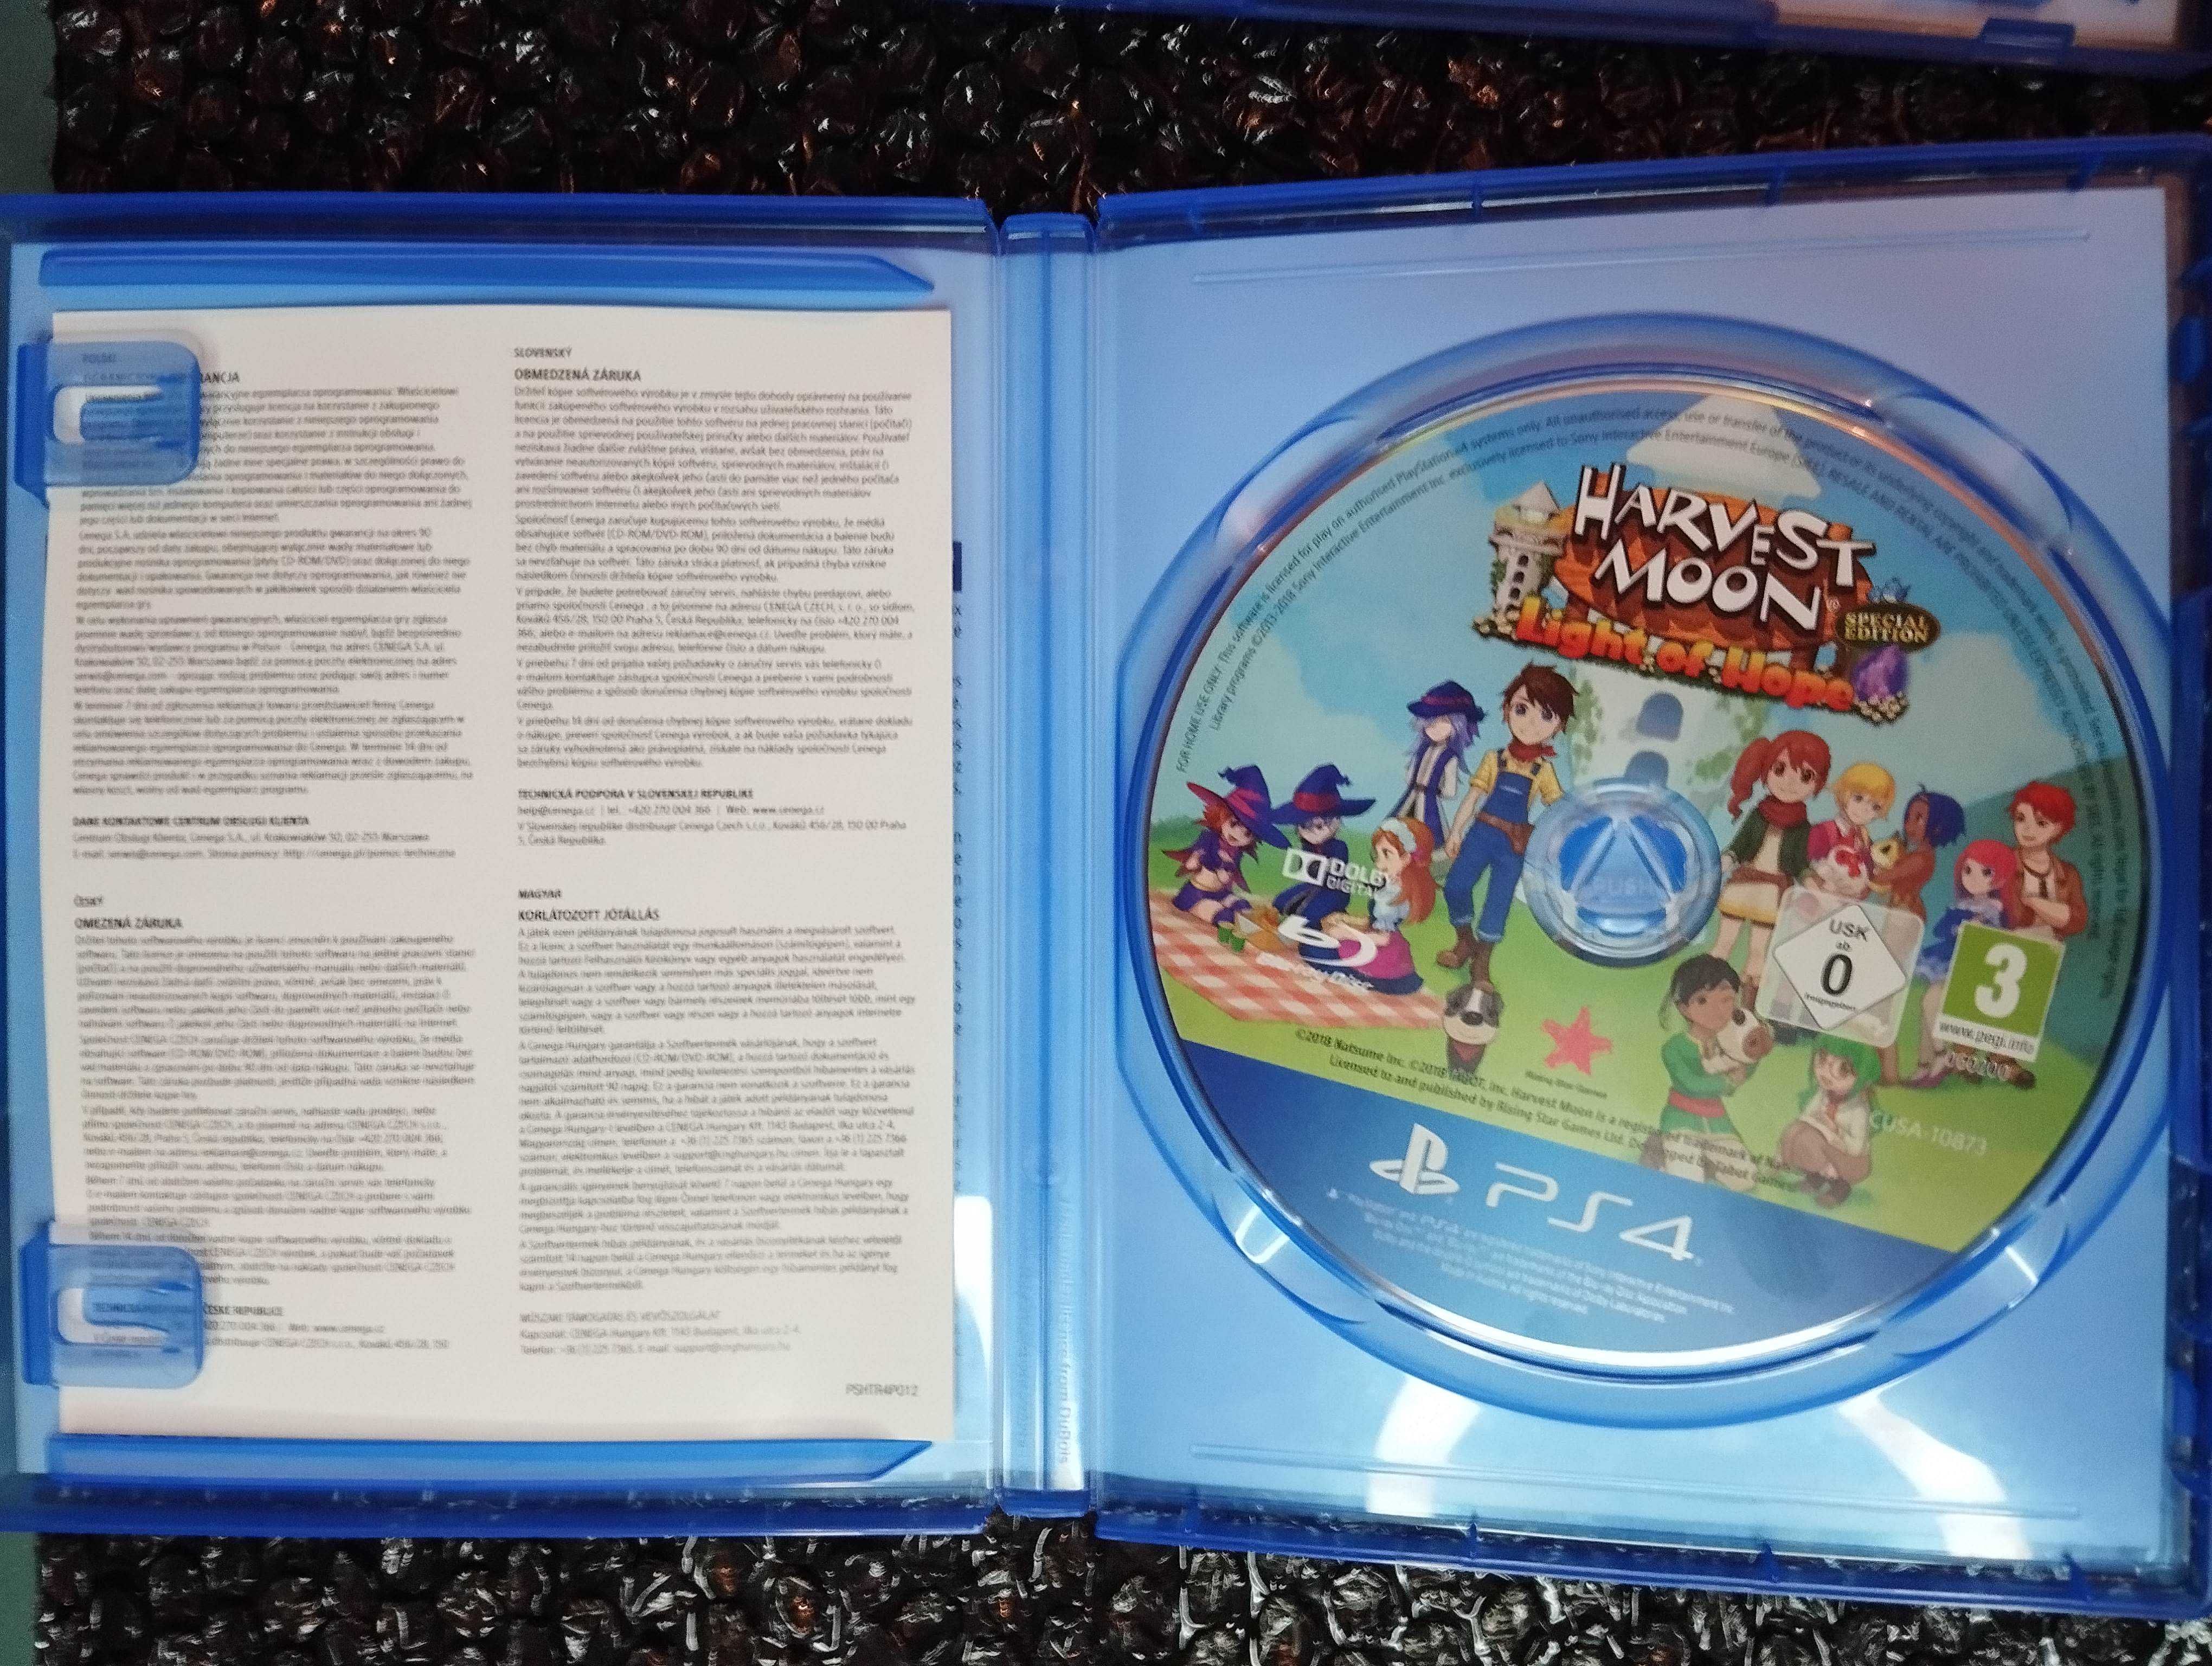 Harvest Moon Light of Hope - PS4 PS5 - duży wybór gier PlayStation